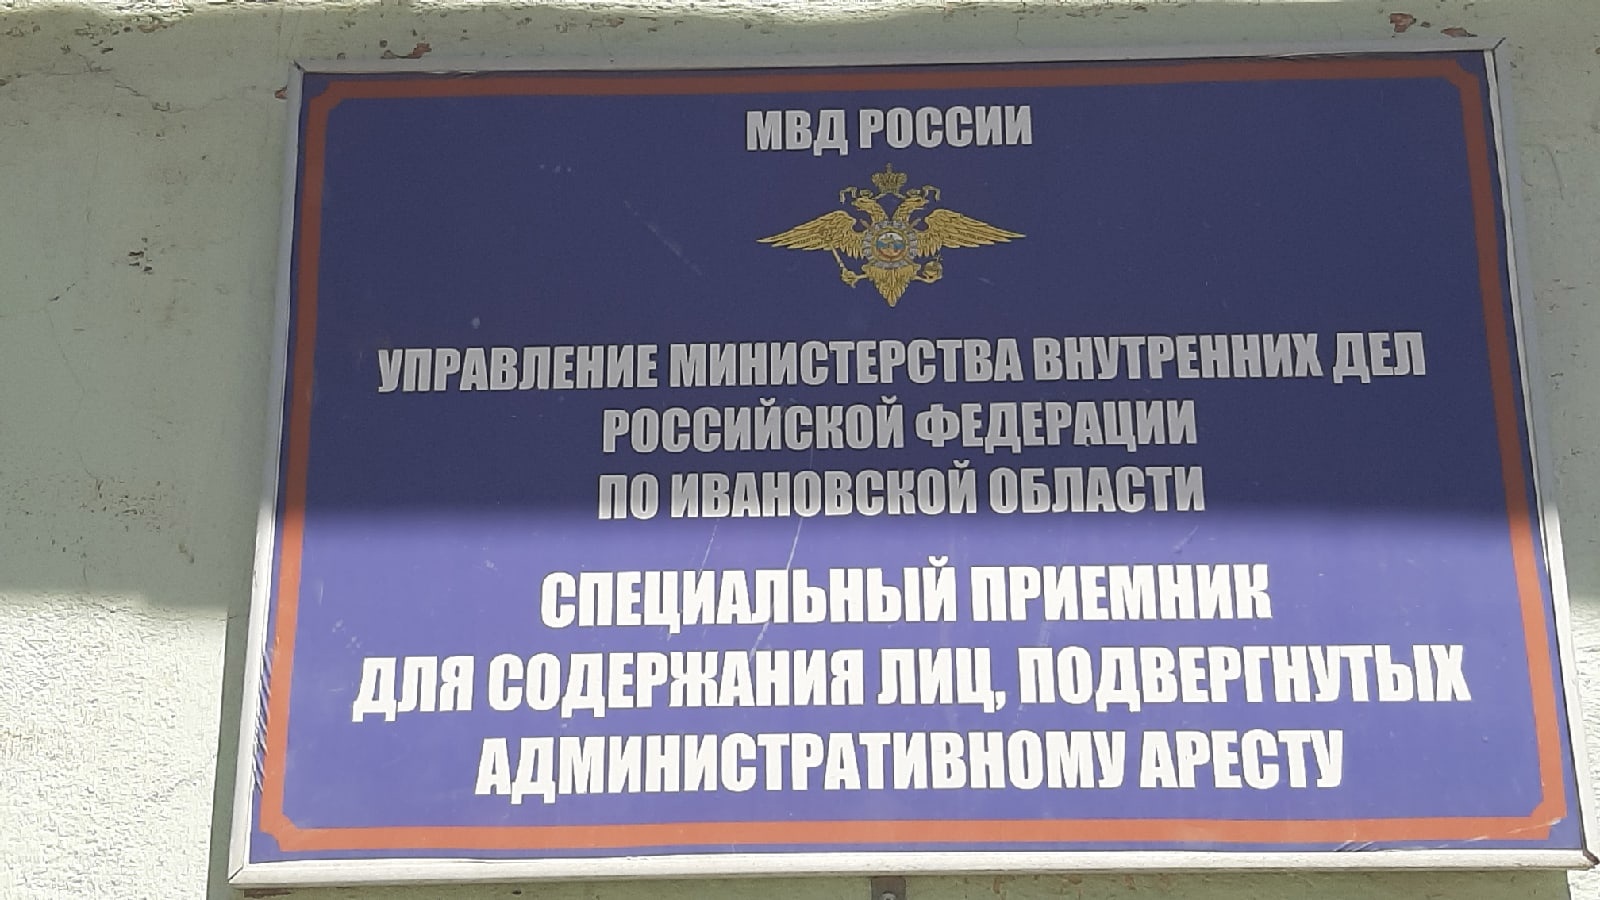 В спецприемнике для лиц, подвергнутых административному аресту в Иванове, не оказалось лекарств